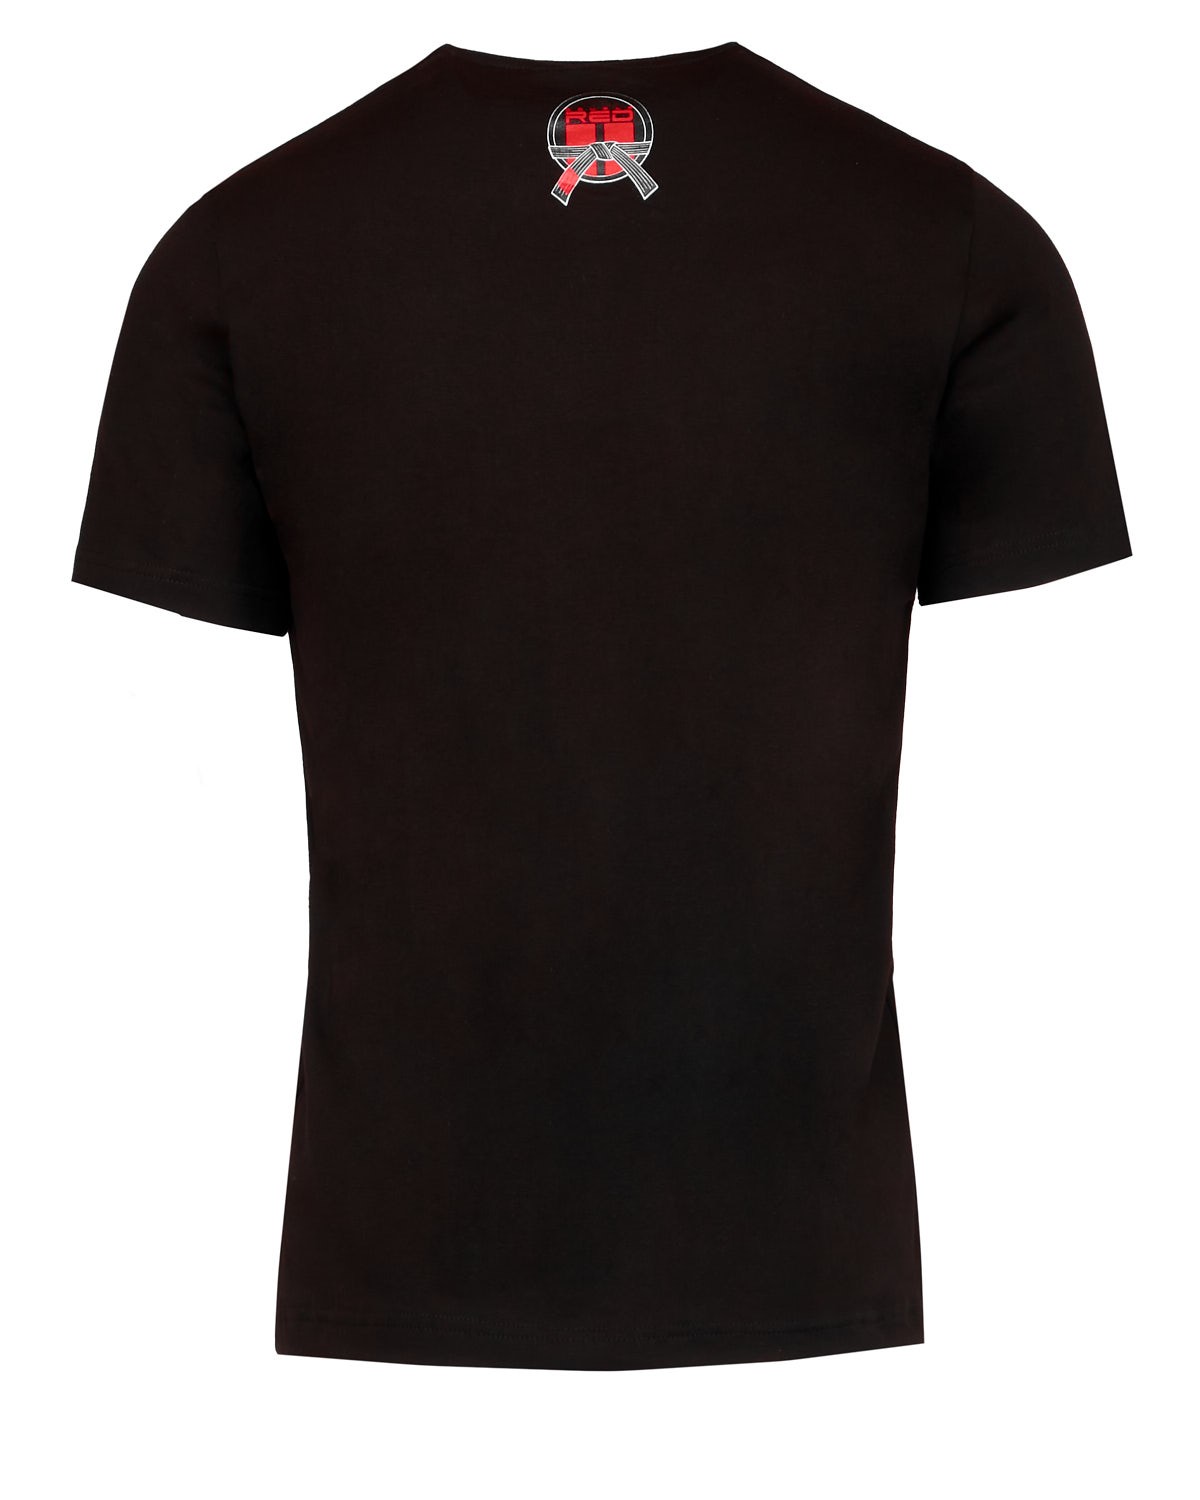 JIU JITSU Black Belt T-shirt Black